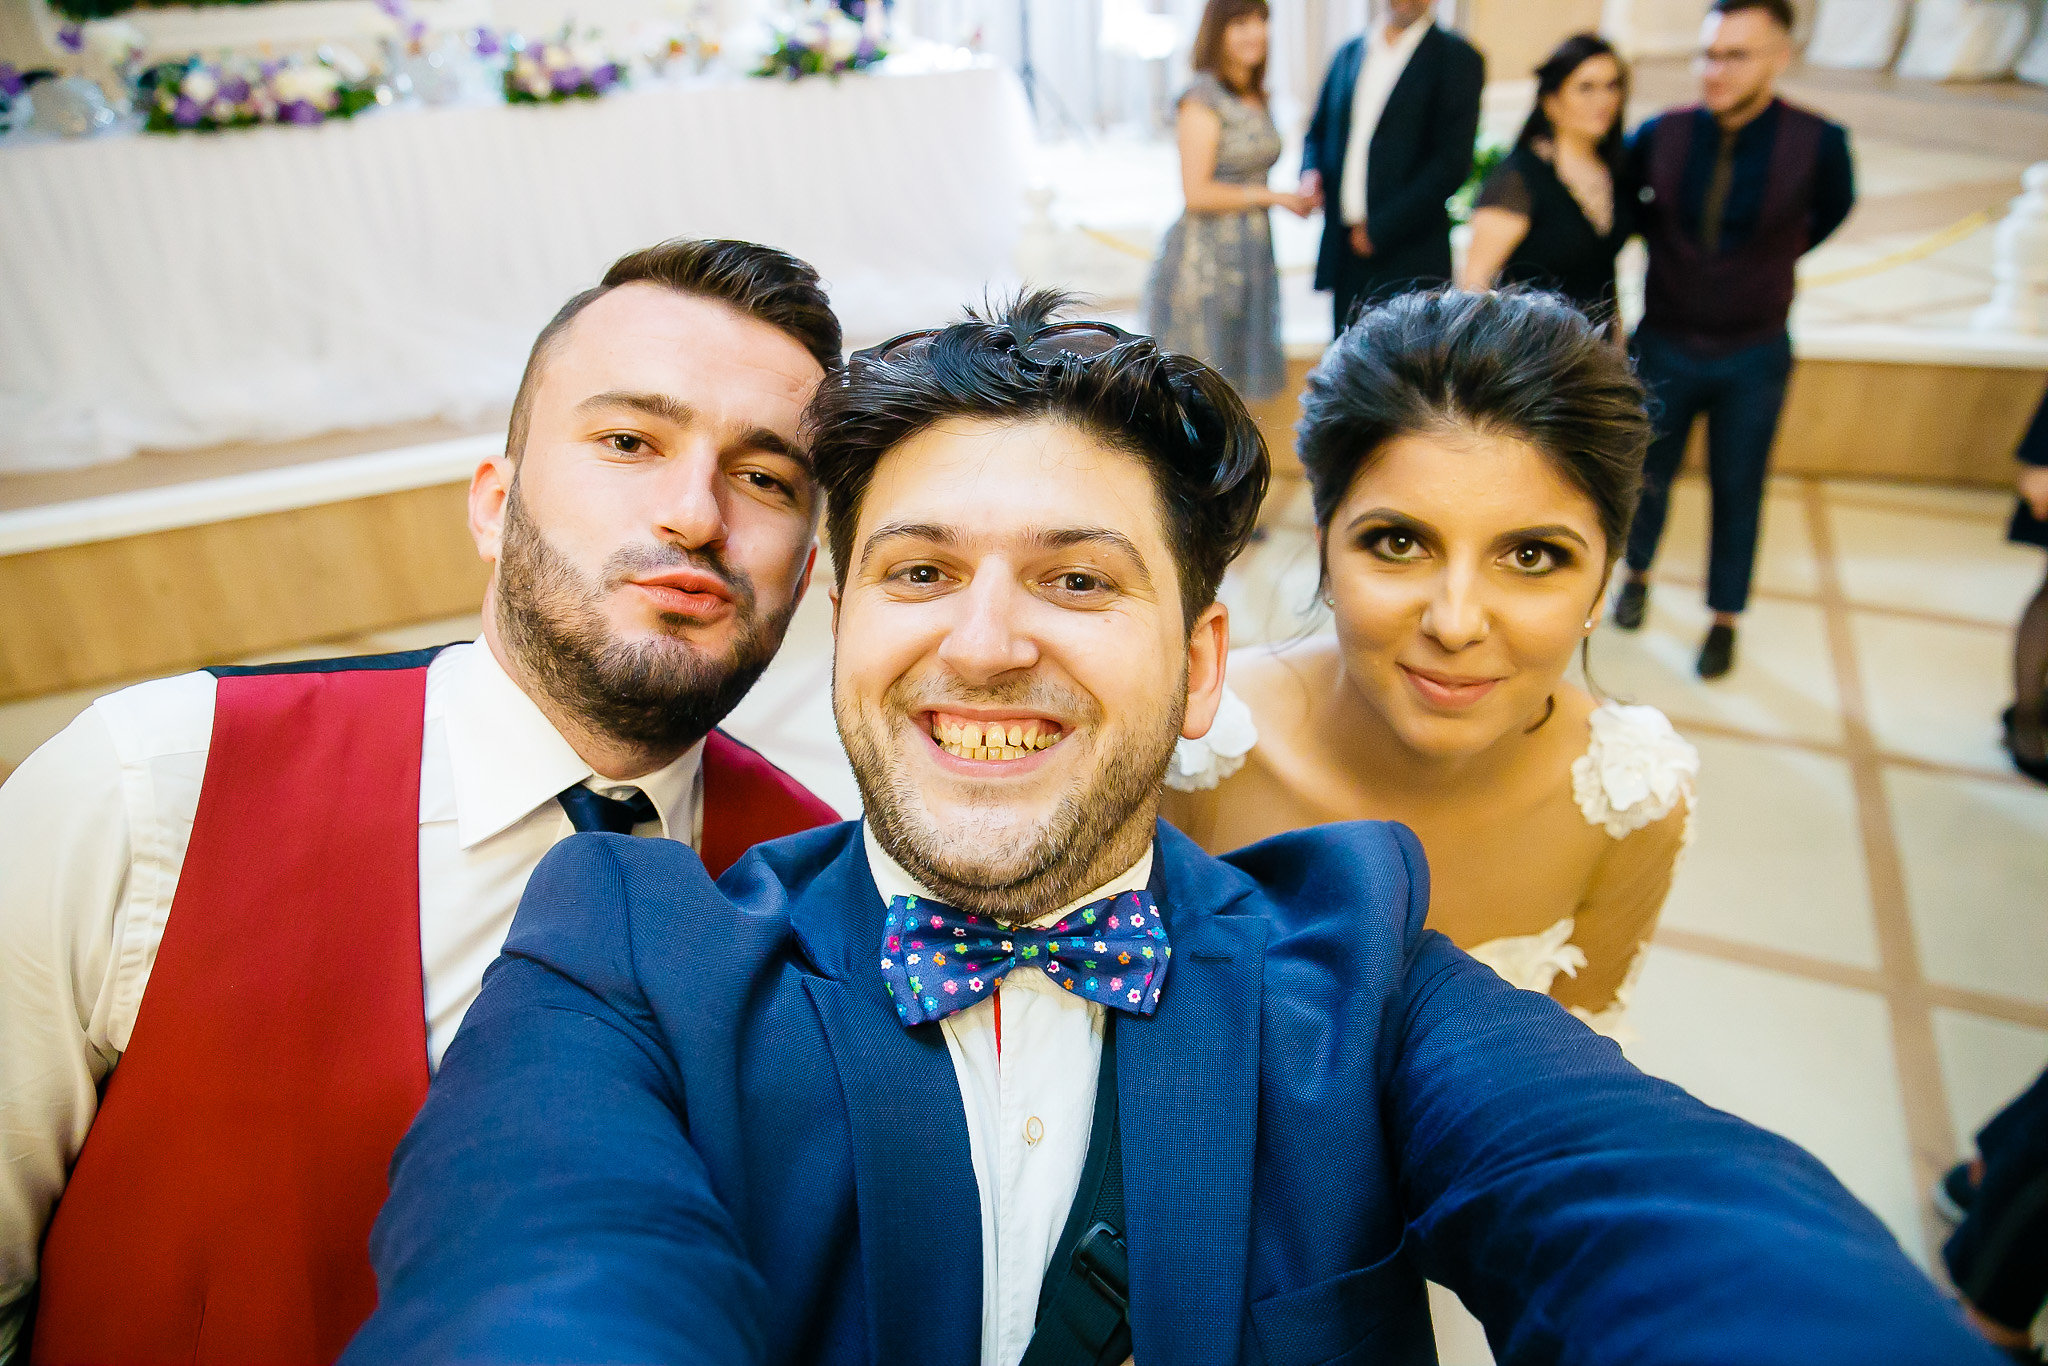 Madalina si Andrei nunta la Castel Iasi BallRoom fotograf profesionist nunta iasi paul padurariu www.paulpadurariu.ro 2018 5